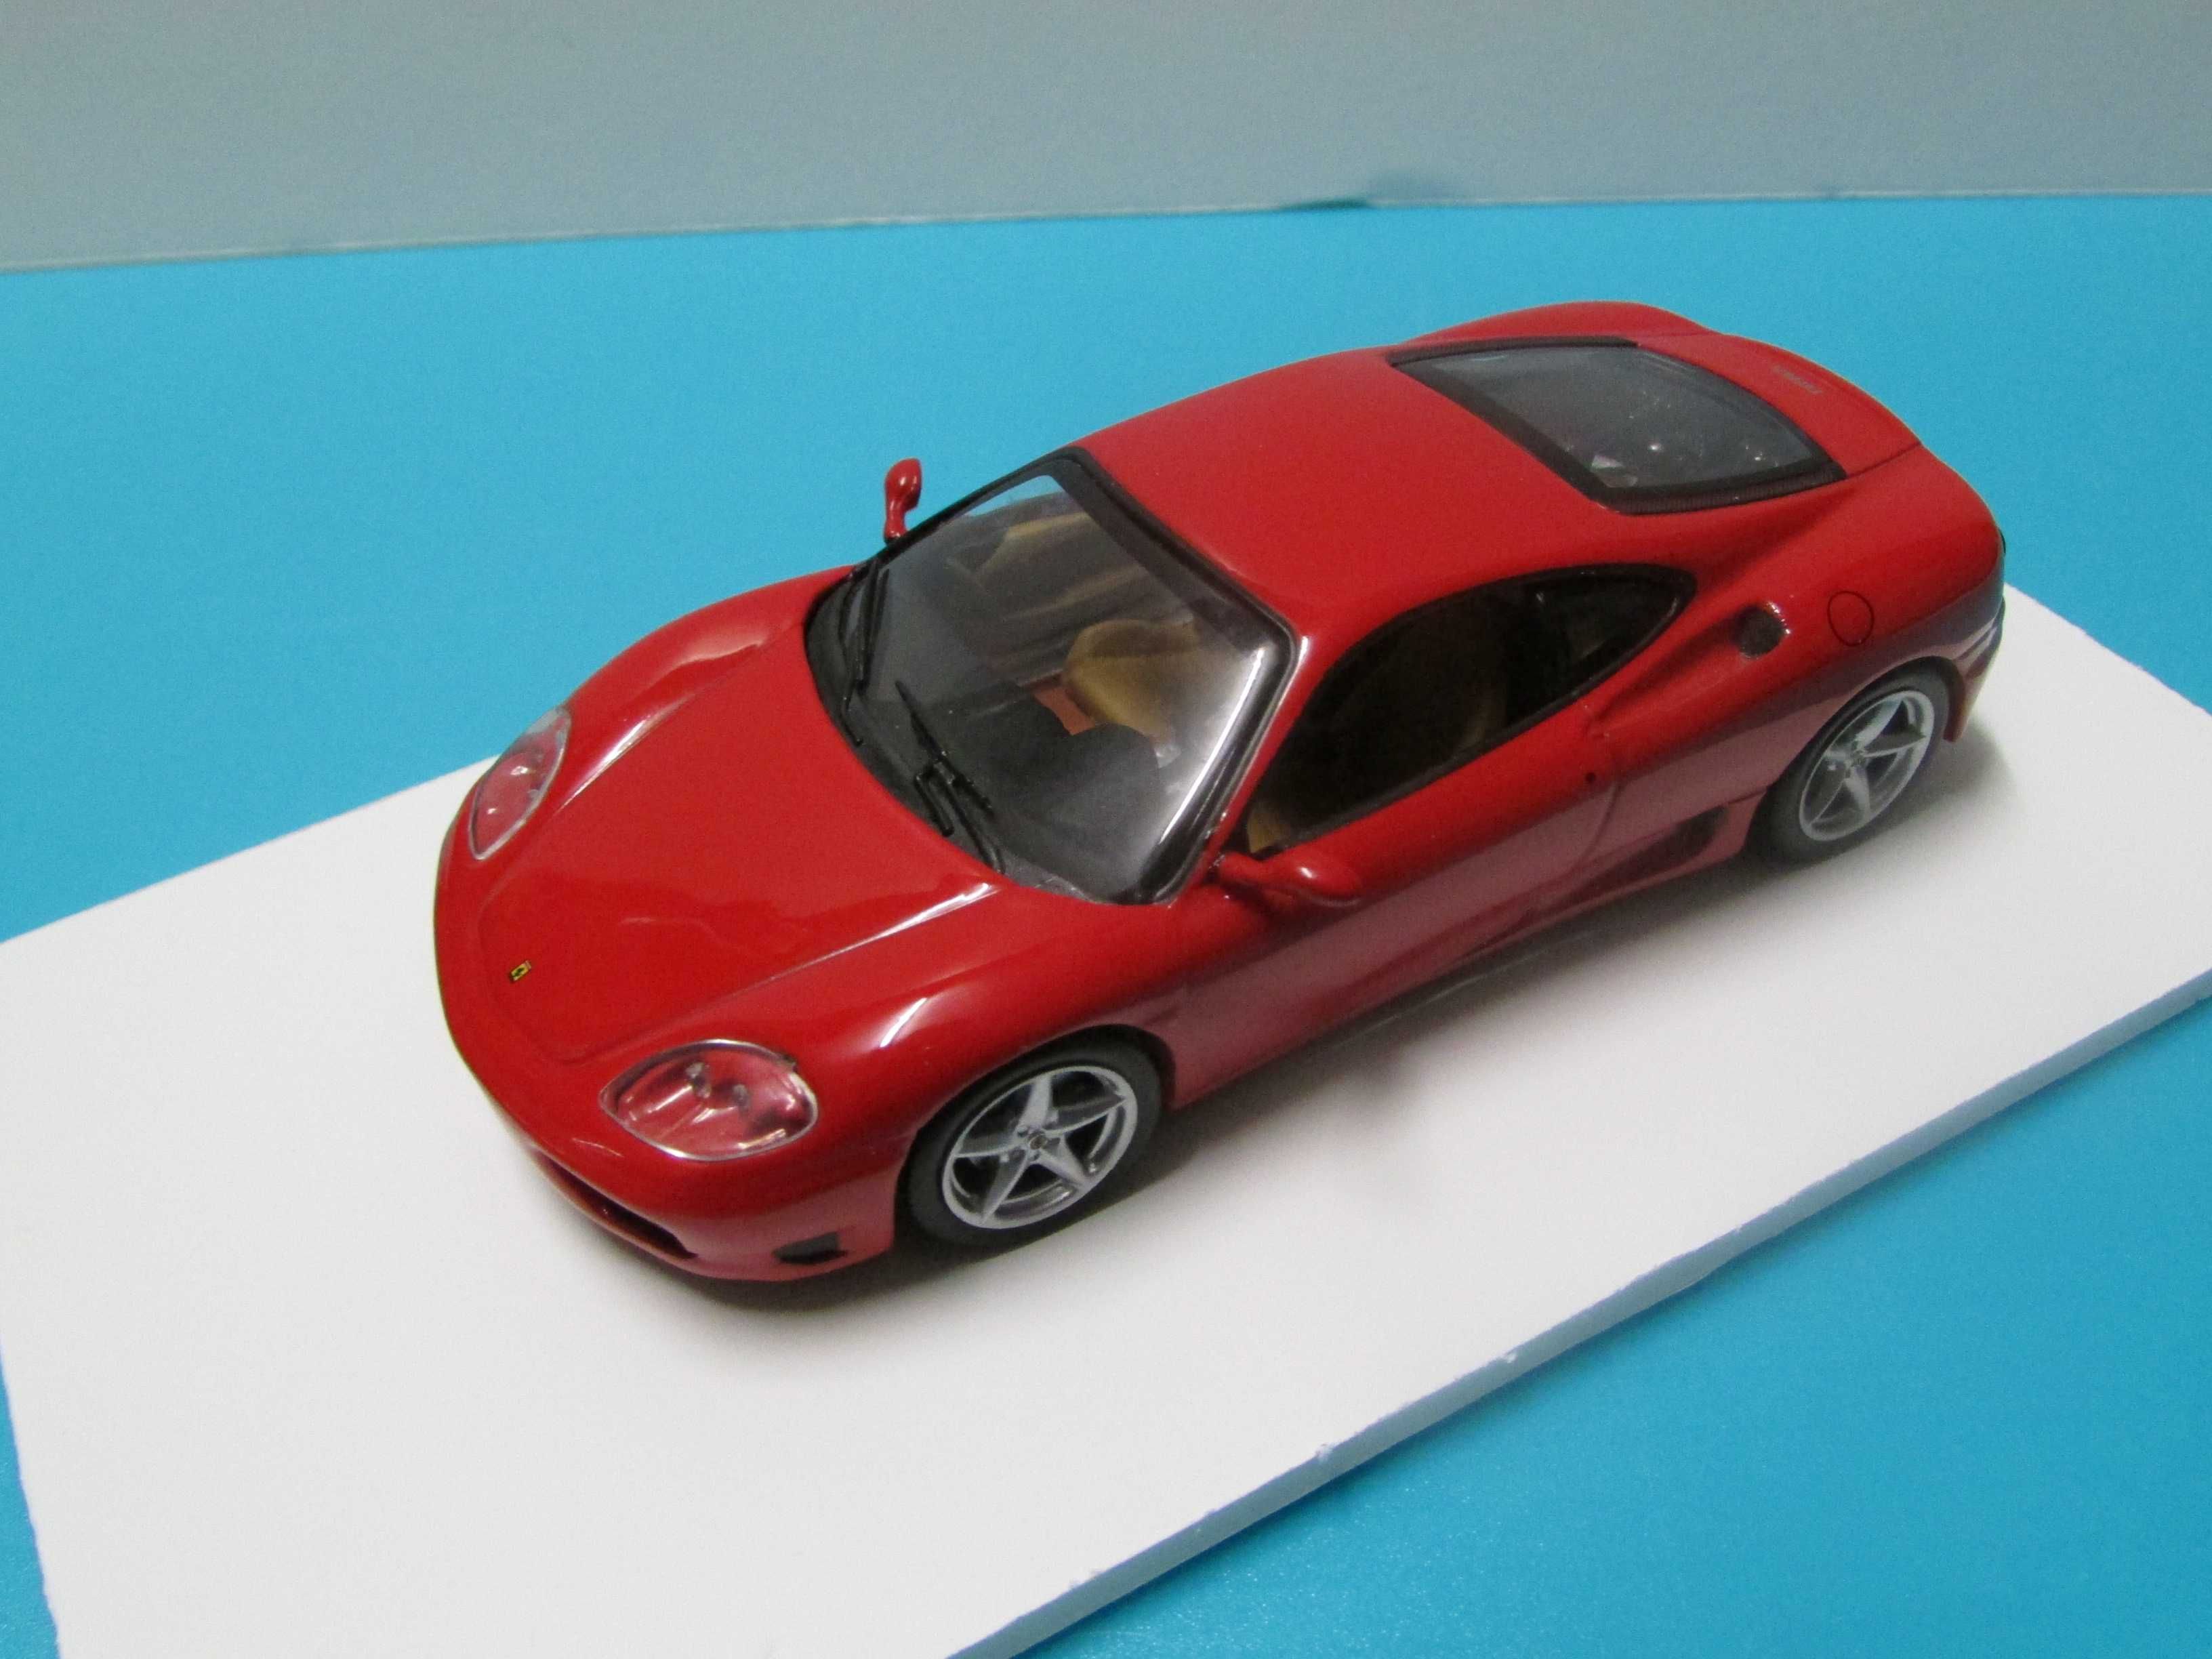 Ferrari 360 Modena (1999) - Miniatura Altaya/IXO escala 1/43